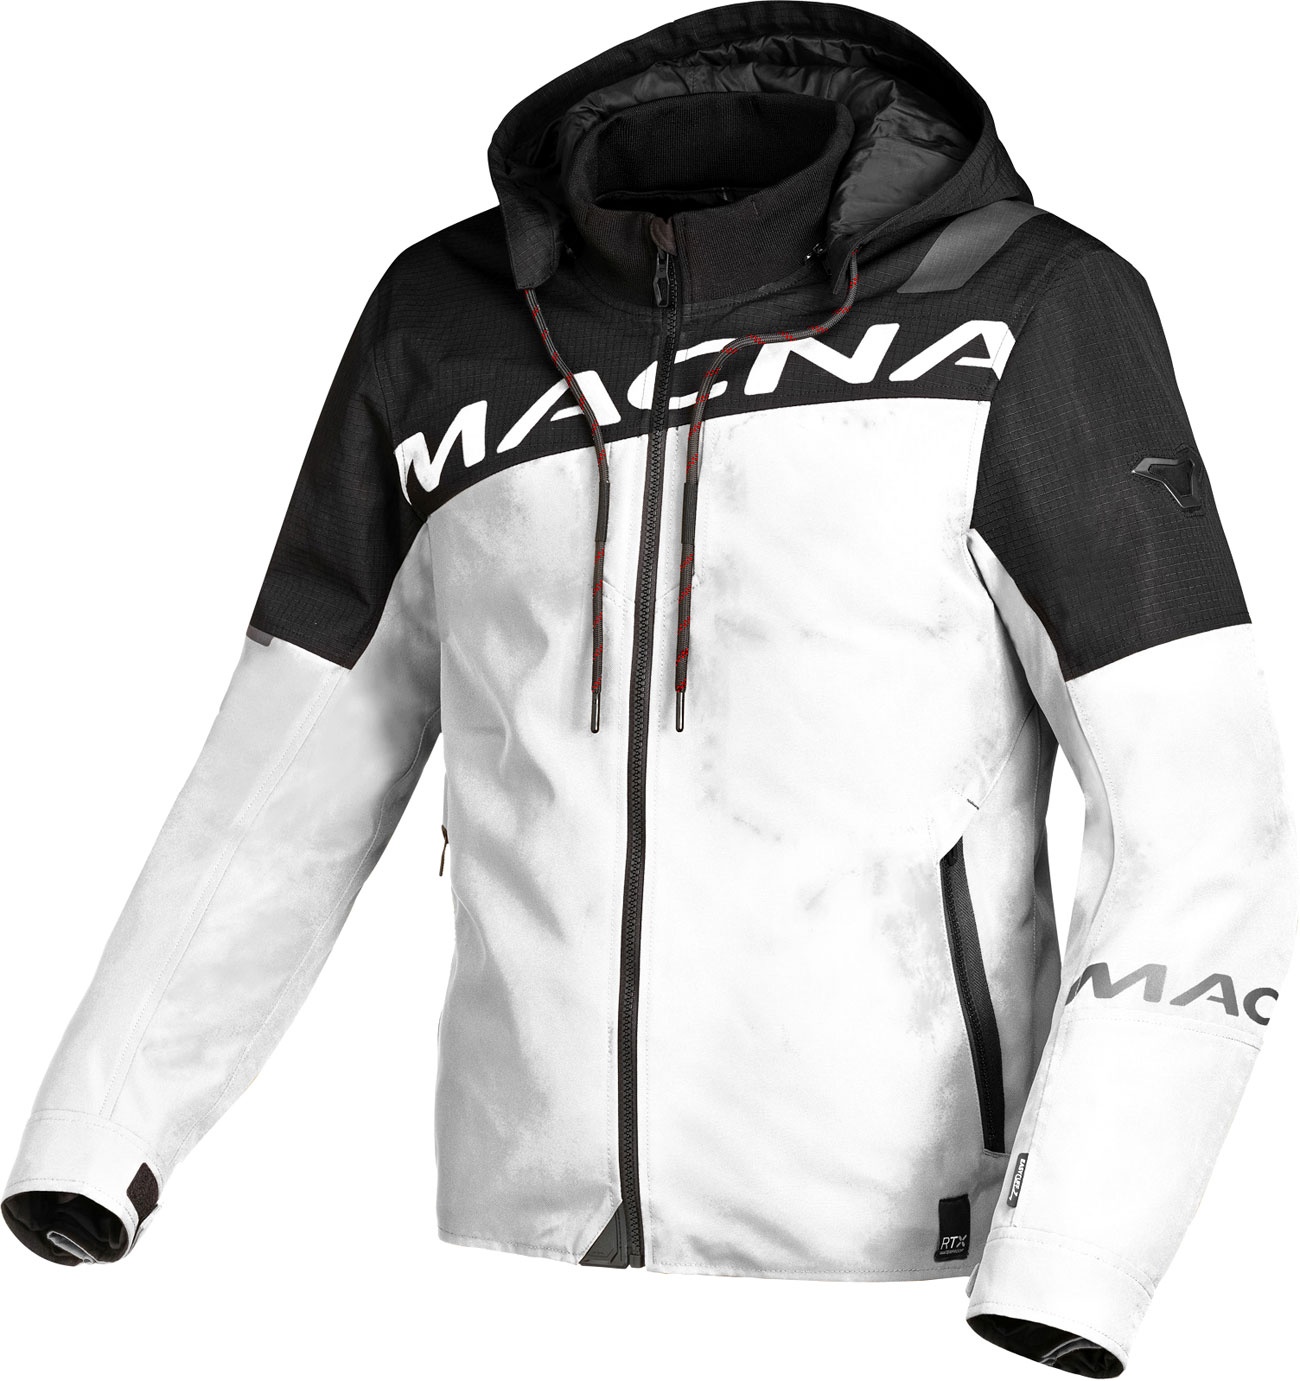 Macna Racoon, veste textile imperméable - Noir/Blanc - M